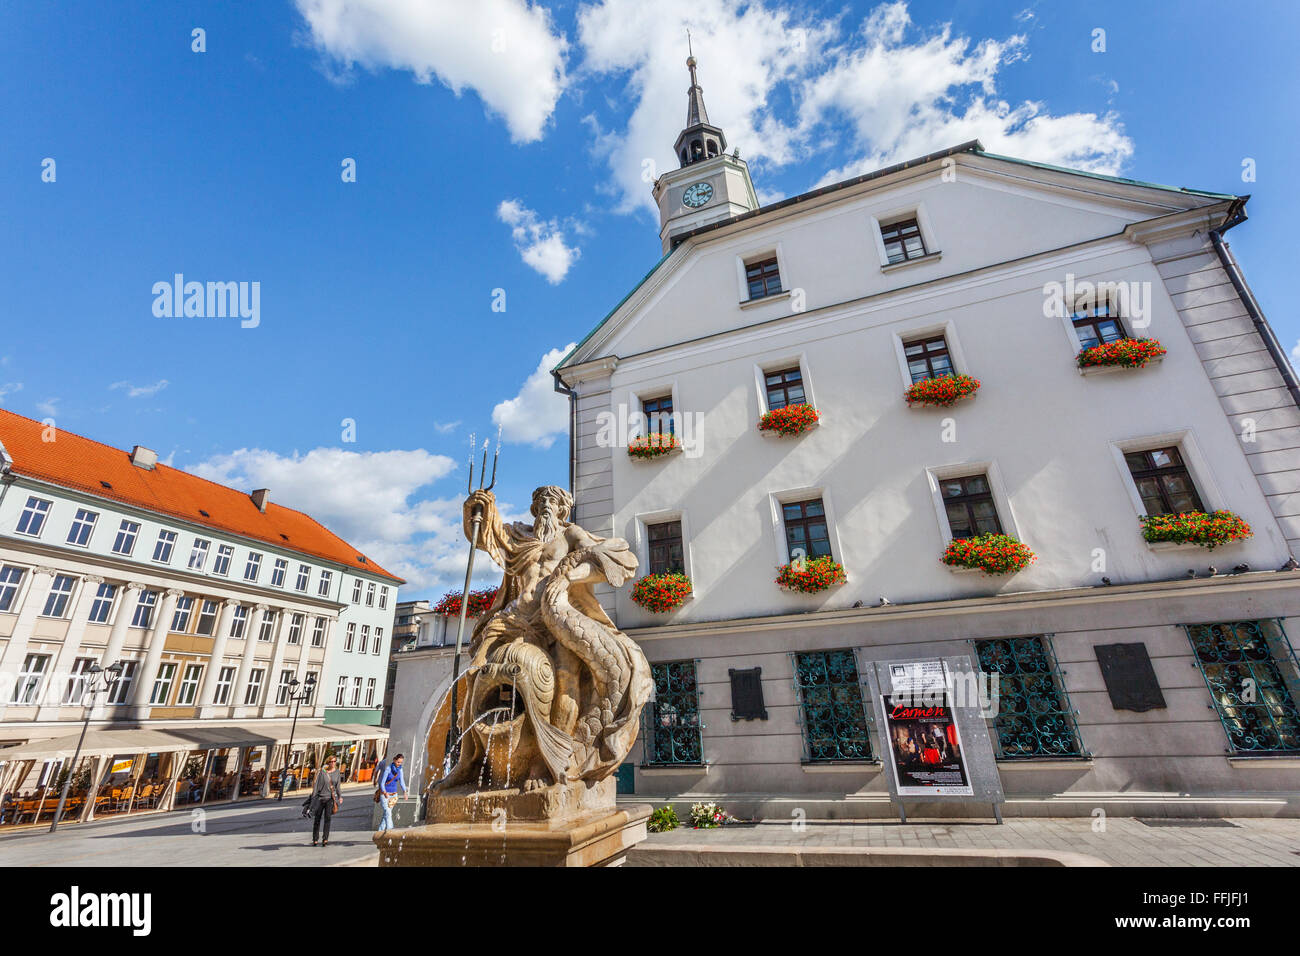 Polen, Oberschlesien, Gliwice (Gleiwitz), Anzeigen des Rynek, der Marktplatz mit Rathaus und Neptunbrunnen Stockfoto